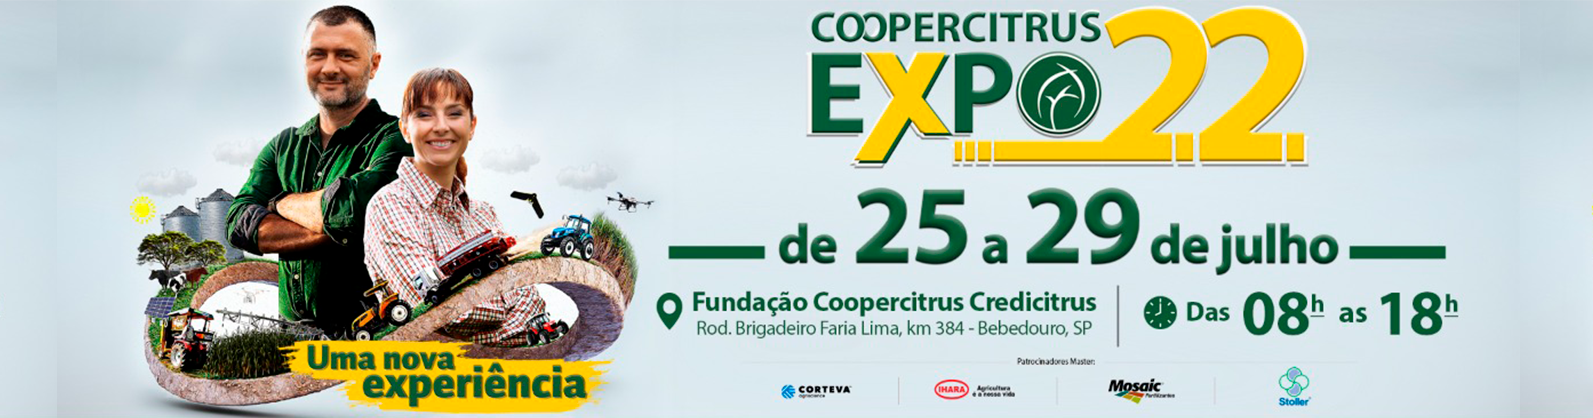 Coopercitrus Expo 2022 ‘Uma Nova Experiência’, de 25 a 29 de julho